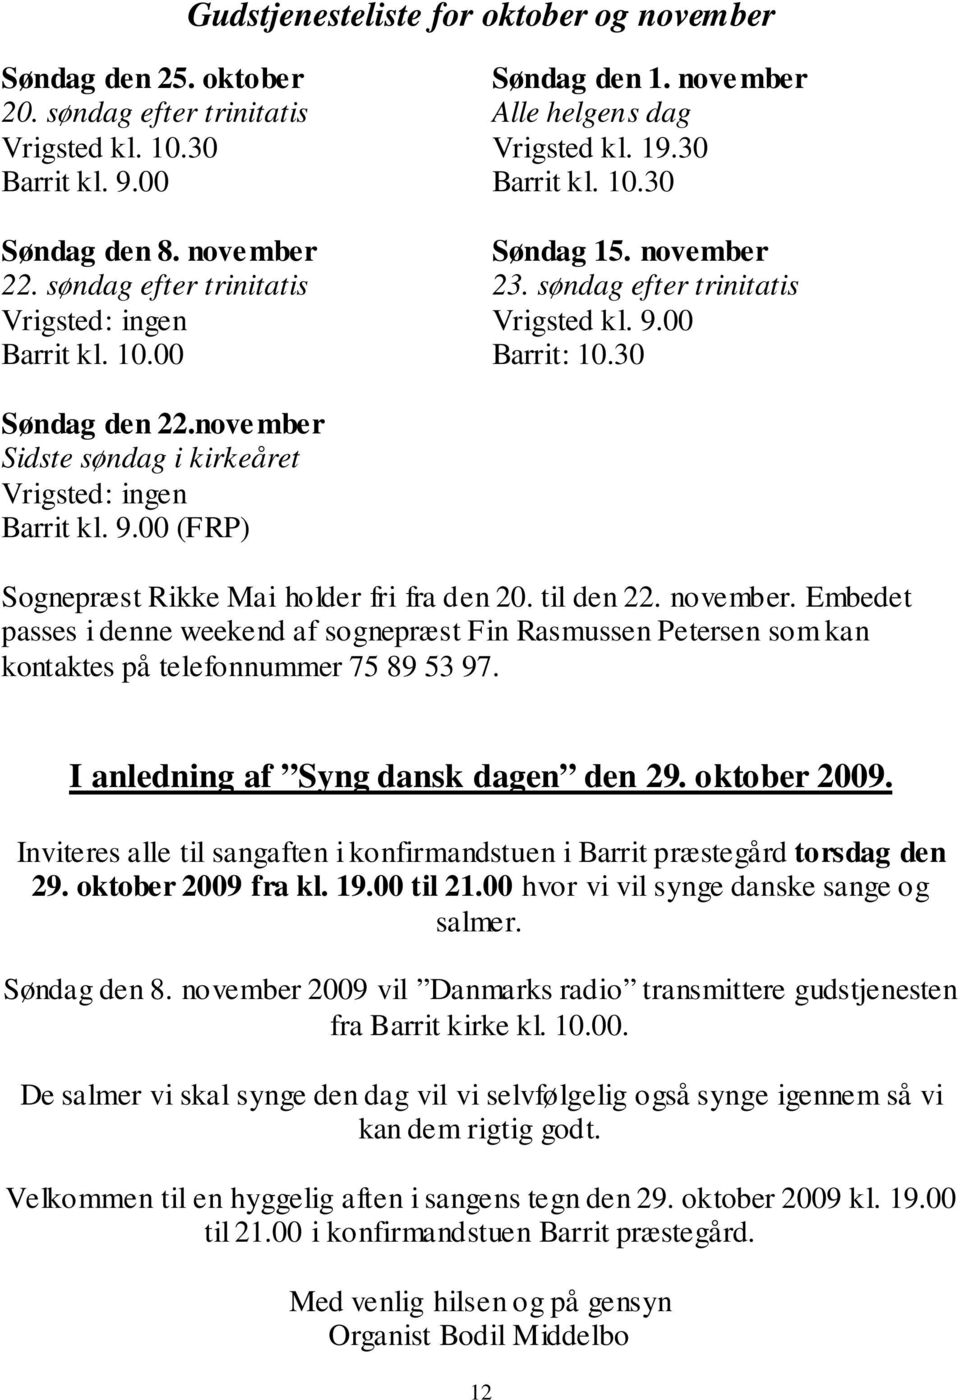 november Sidste søndag i kirkeåret Vrigsted: ingen Barrit kl. 9.00 (FRP) Sognepræst Rikke Mai holder fri fra den 20. til den 22. november.